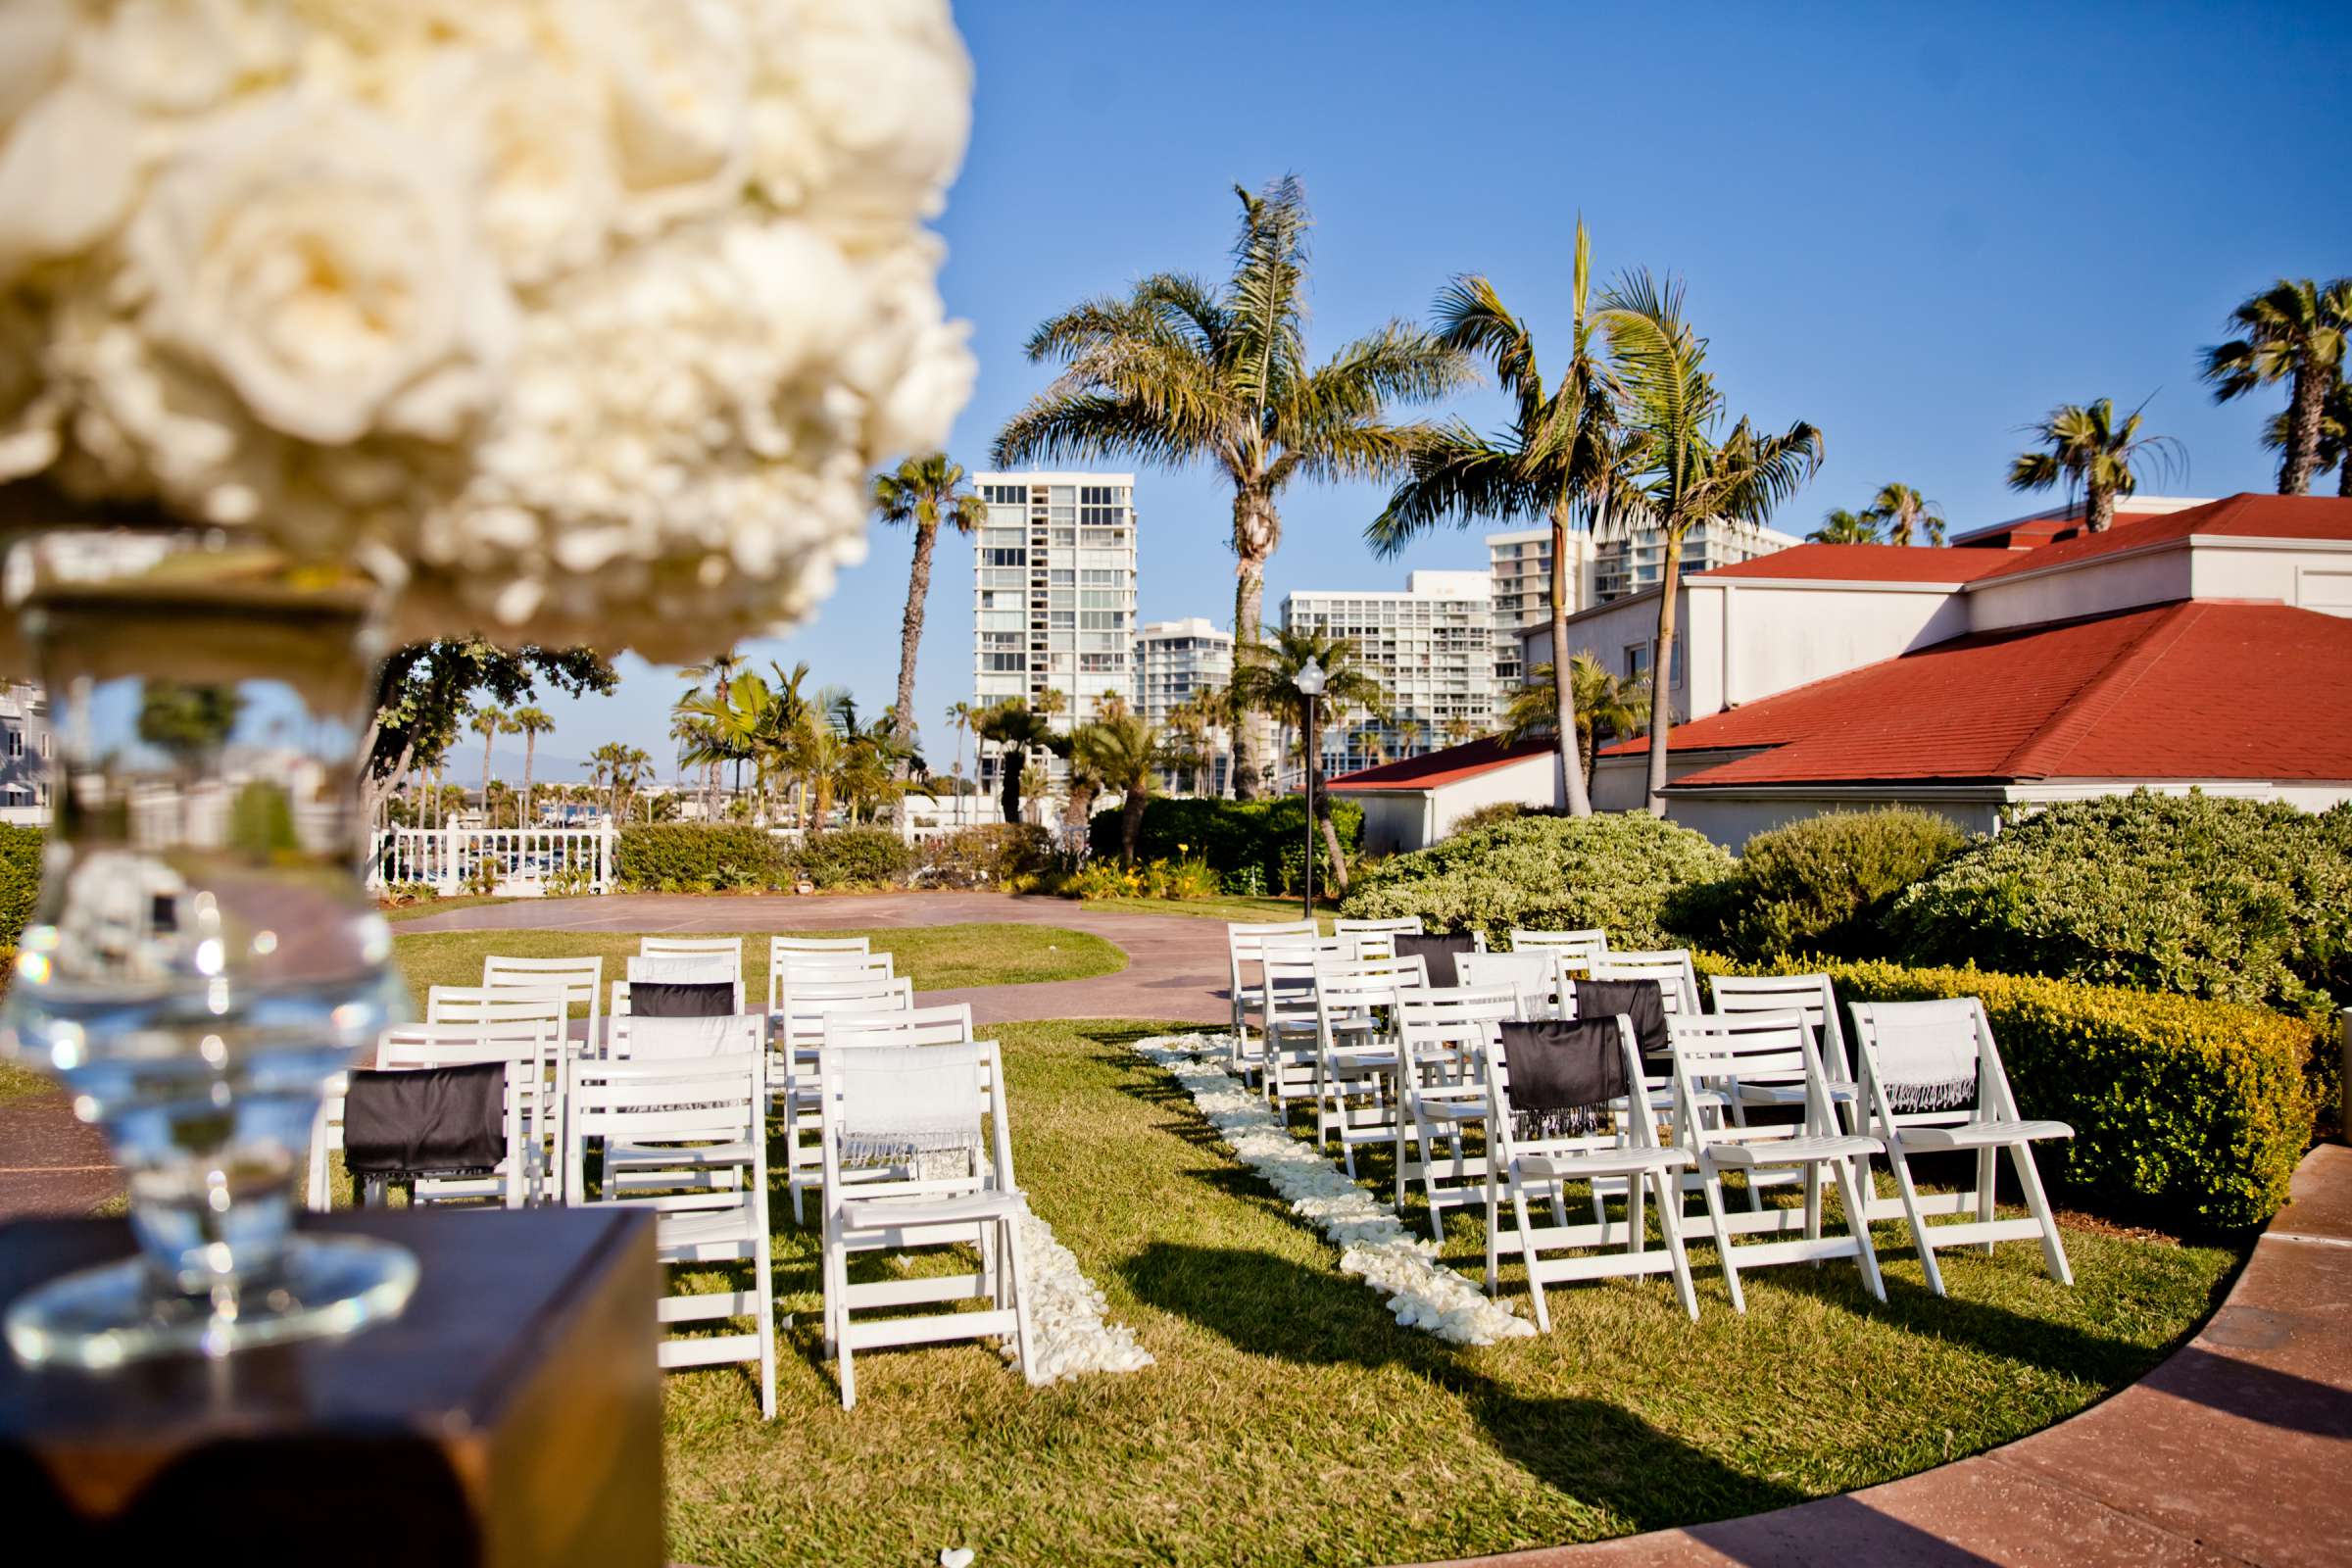 Hotel Del Coronado Wedding, Melis and Marc Wedding Photo #48 by True Photography